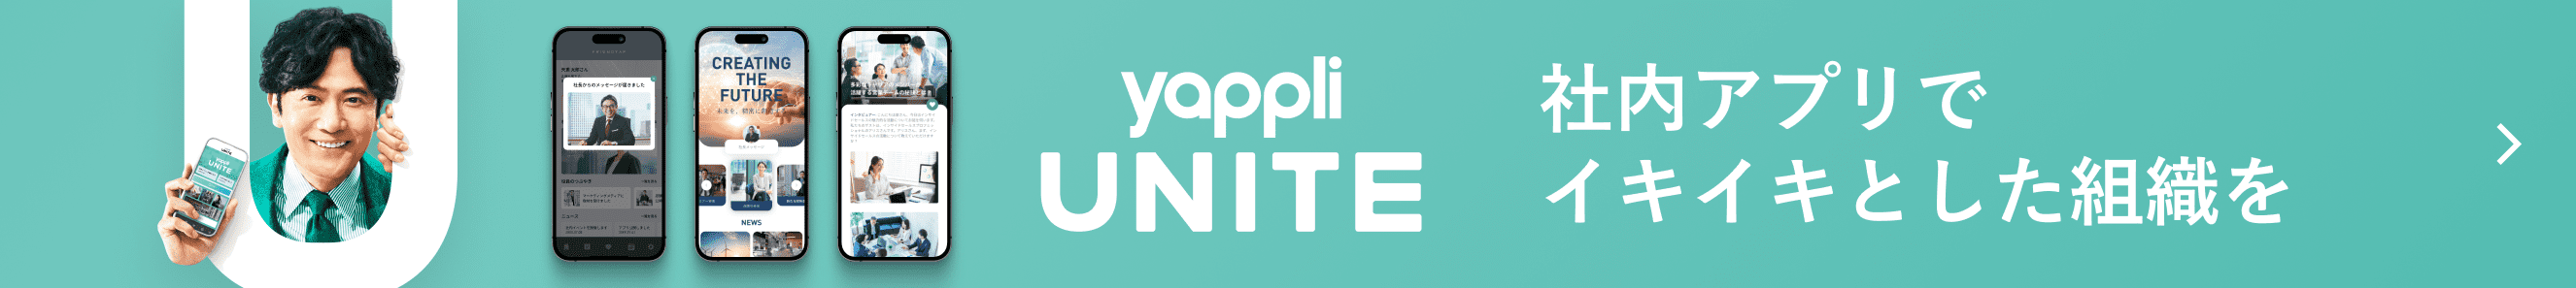 Yappli UNITE 社内アプリでイキイキとした組織を